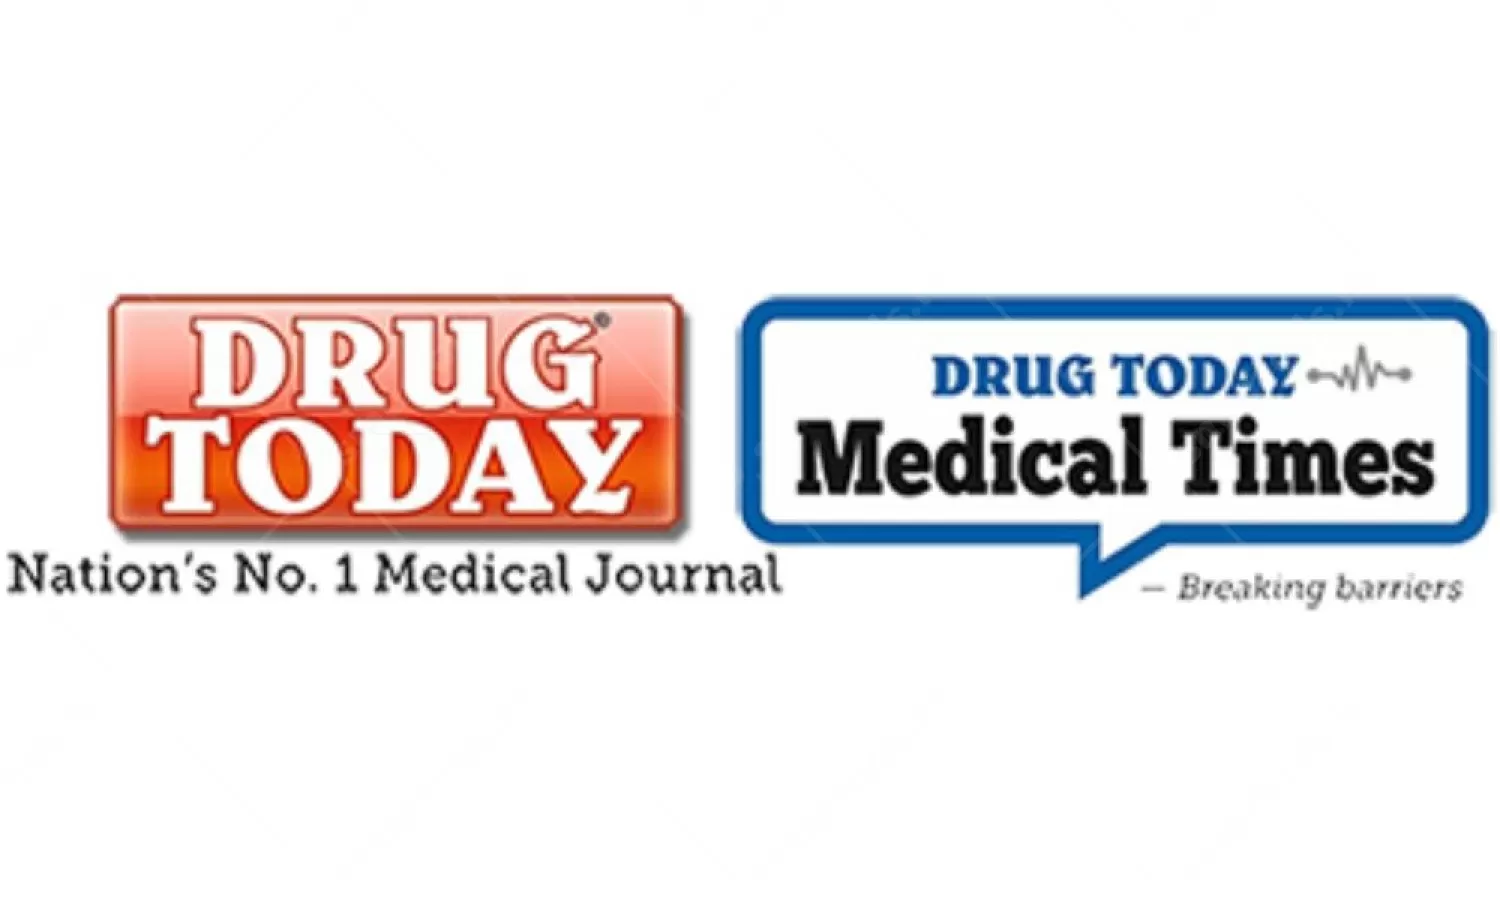 Digital Media Drug Today Advertising in India